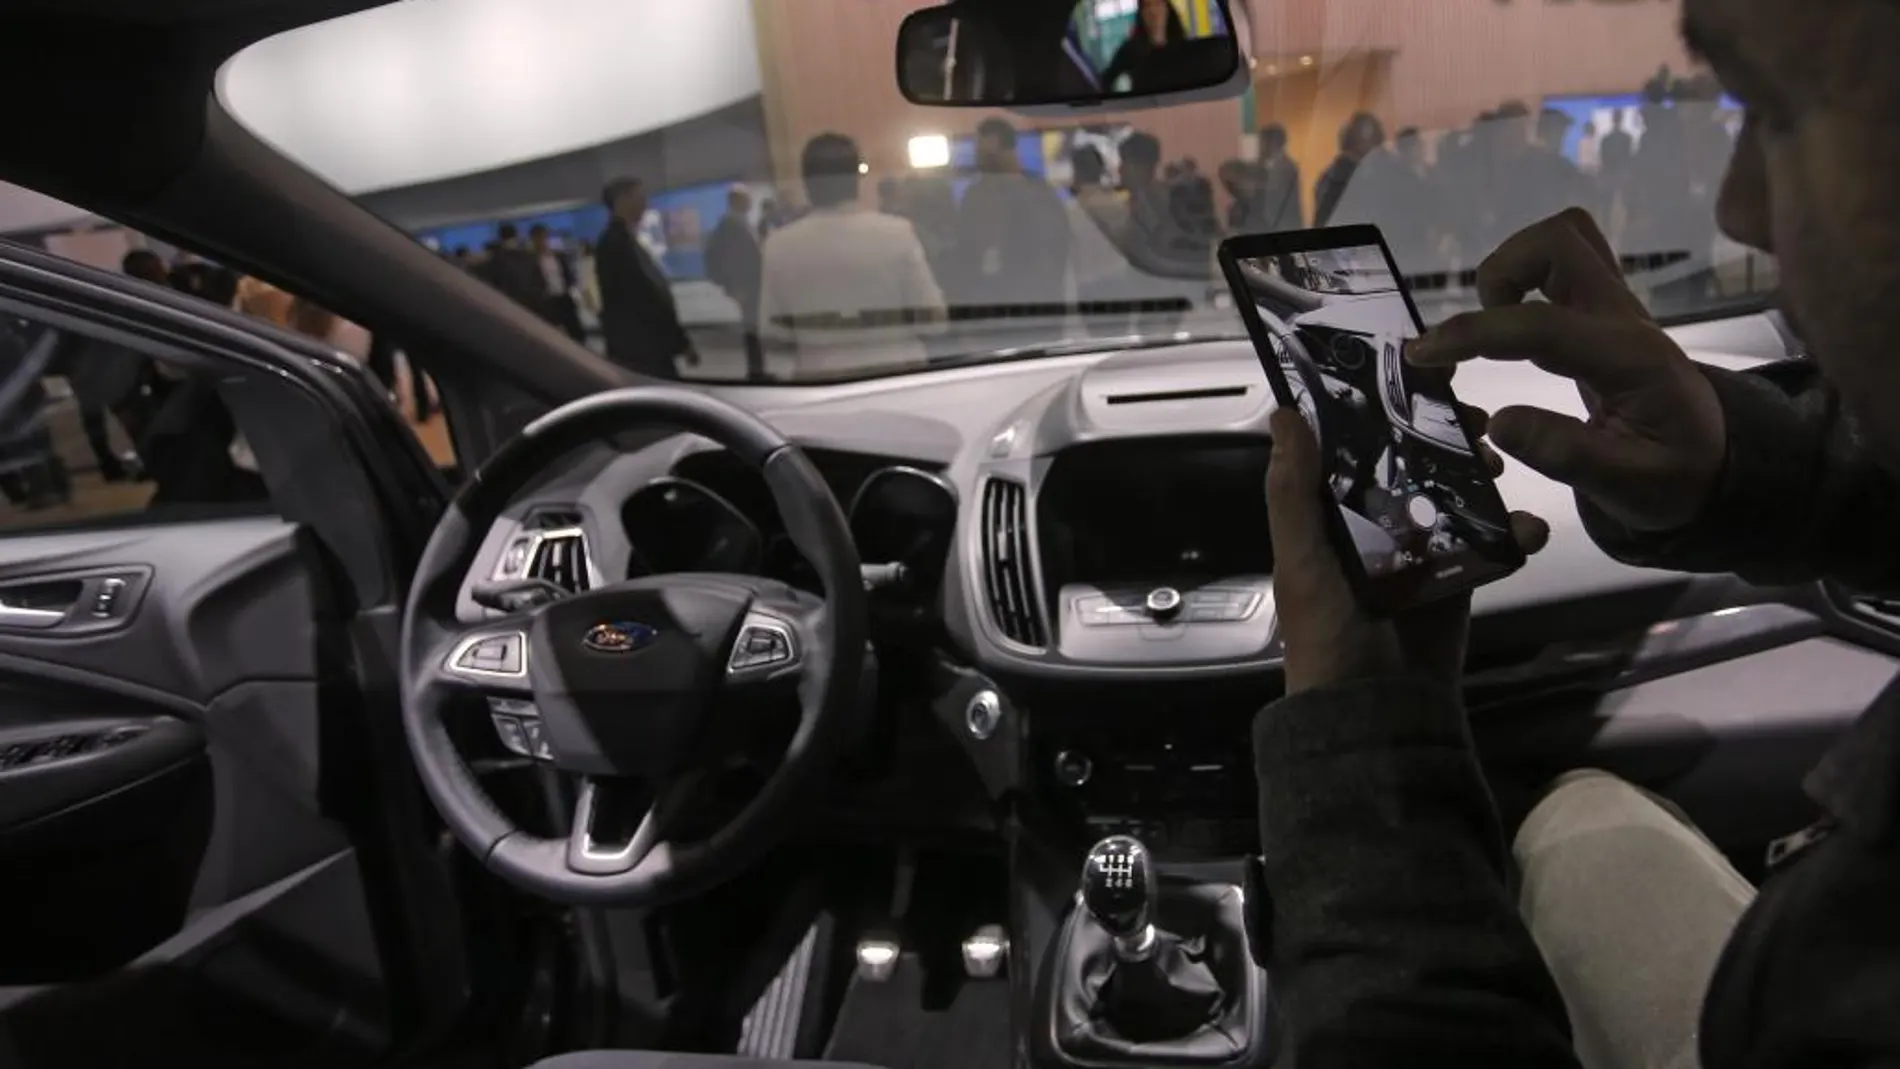 Ford ha mostrado en Barcelona el nuevo SUV Kuga, que incorpora Sync 3, un sistema de navegación por voz totalmente interactivo